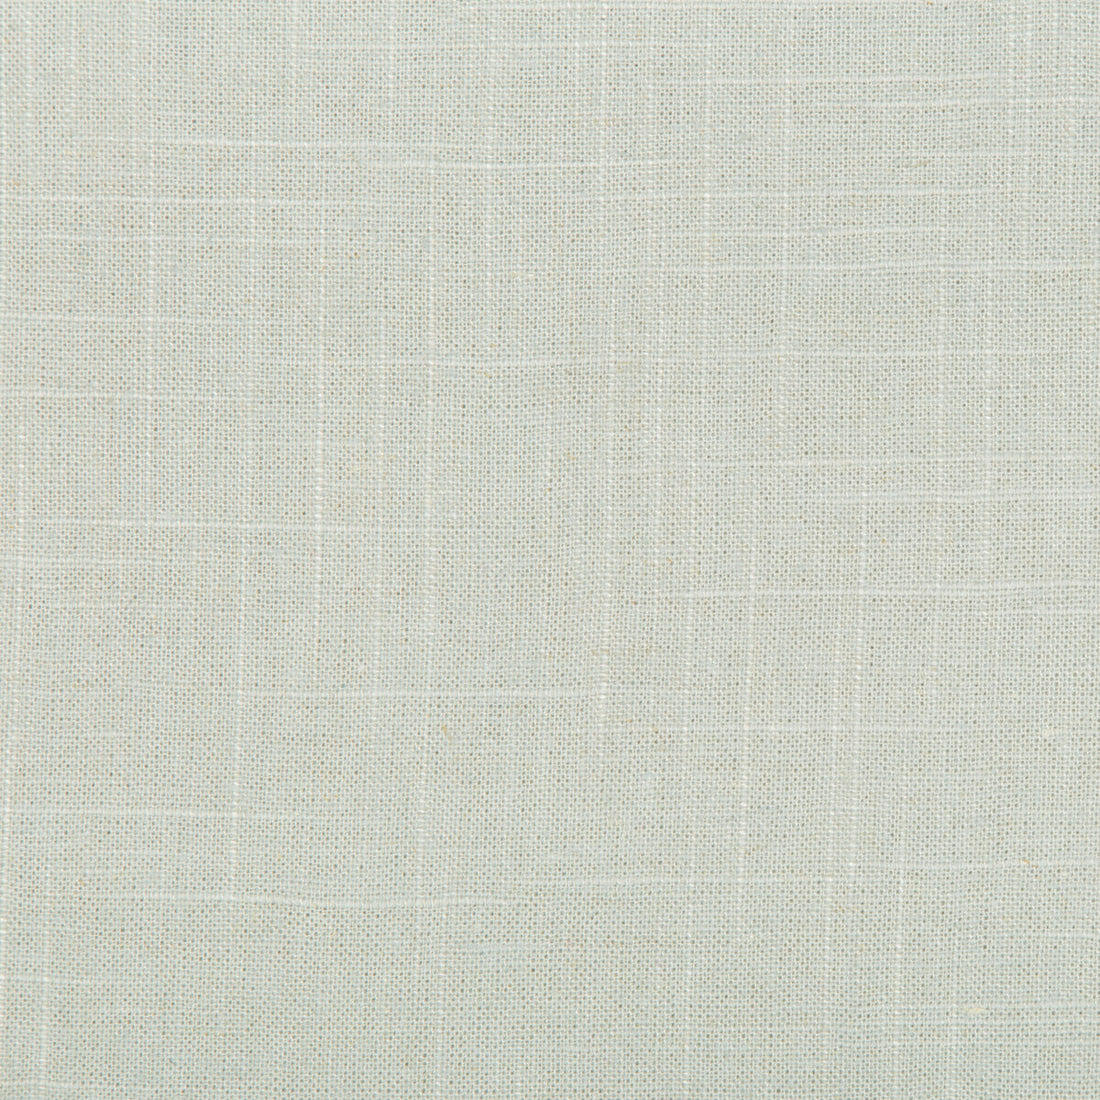 Kravet Basics fabric in 30808-1315 color - pattern 30808.1315.0 - by Kravet Basics